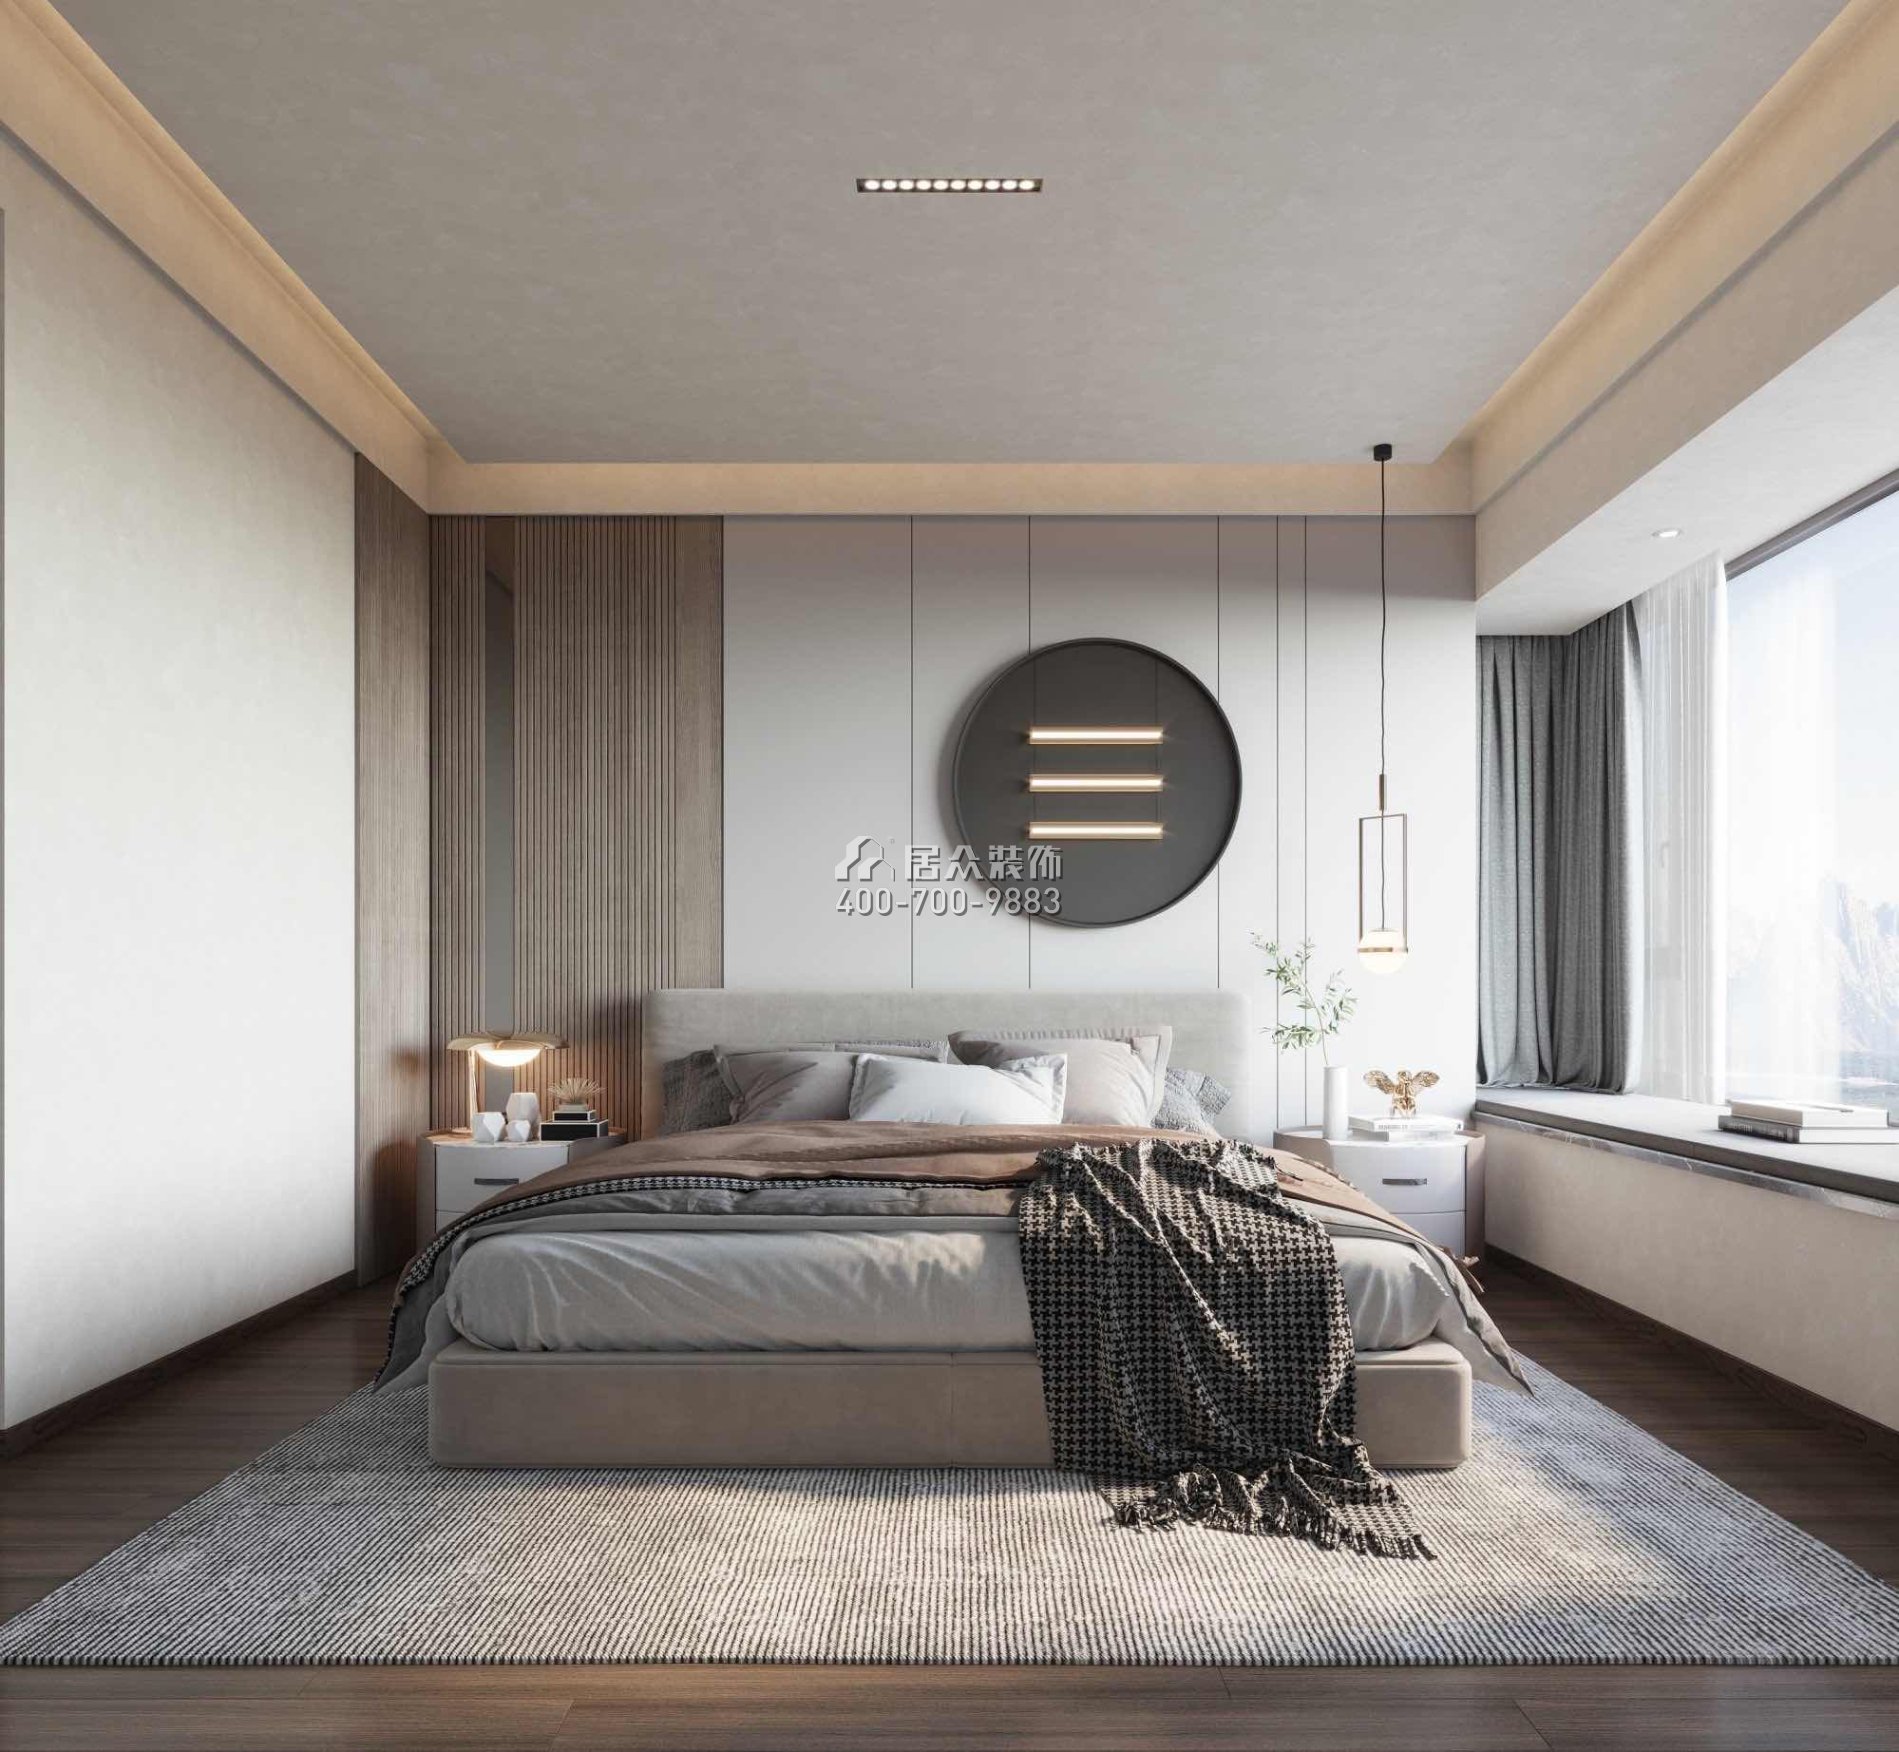 華發綠洋灣160平方米現代簡約風格平層戶型臥室裝修效果圖